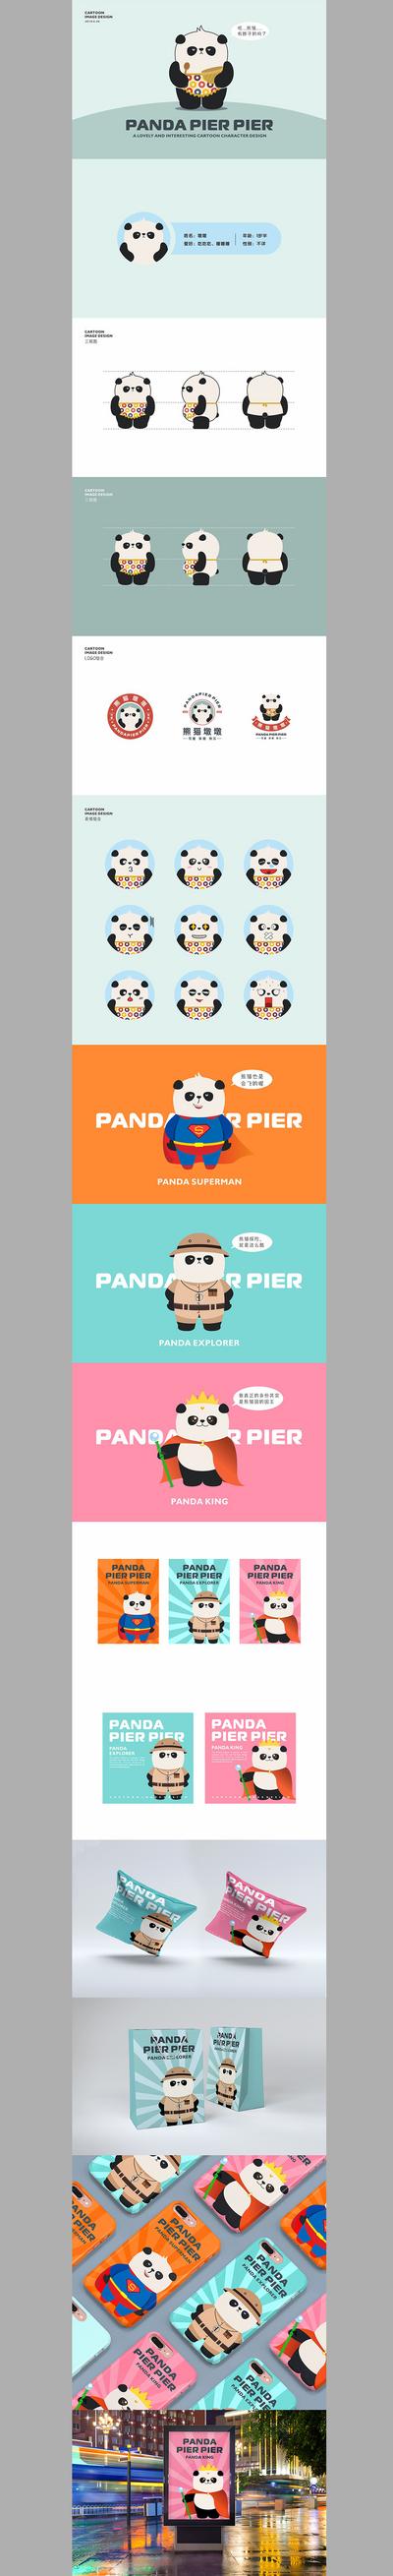 南门网 IP 熊猫 卡通 形象设计 手机壳 手提袋 动物 可爱   